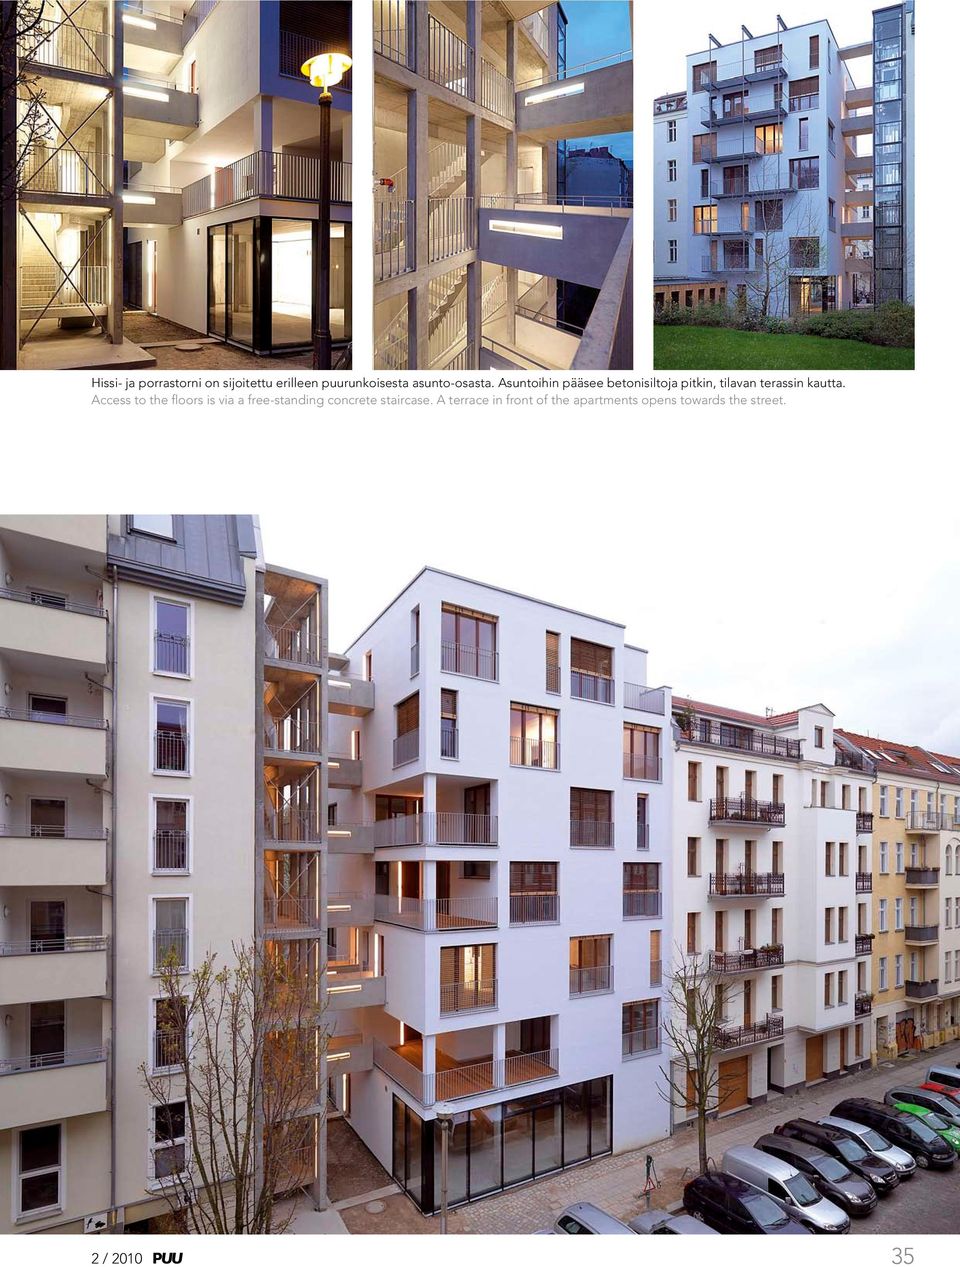 Asuntoihin pääsee betonisiltoja pitkin, tilavan terassin kautta.